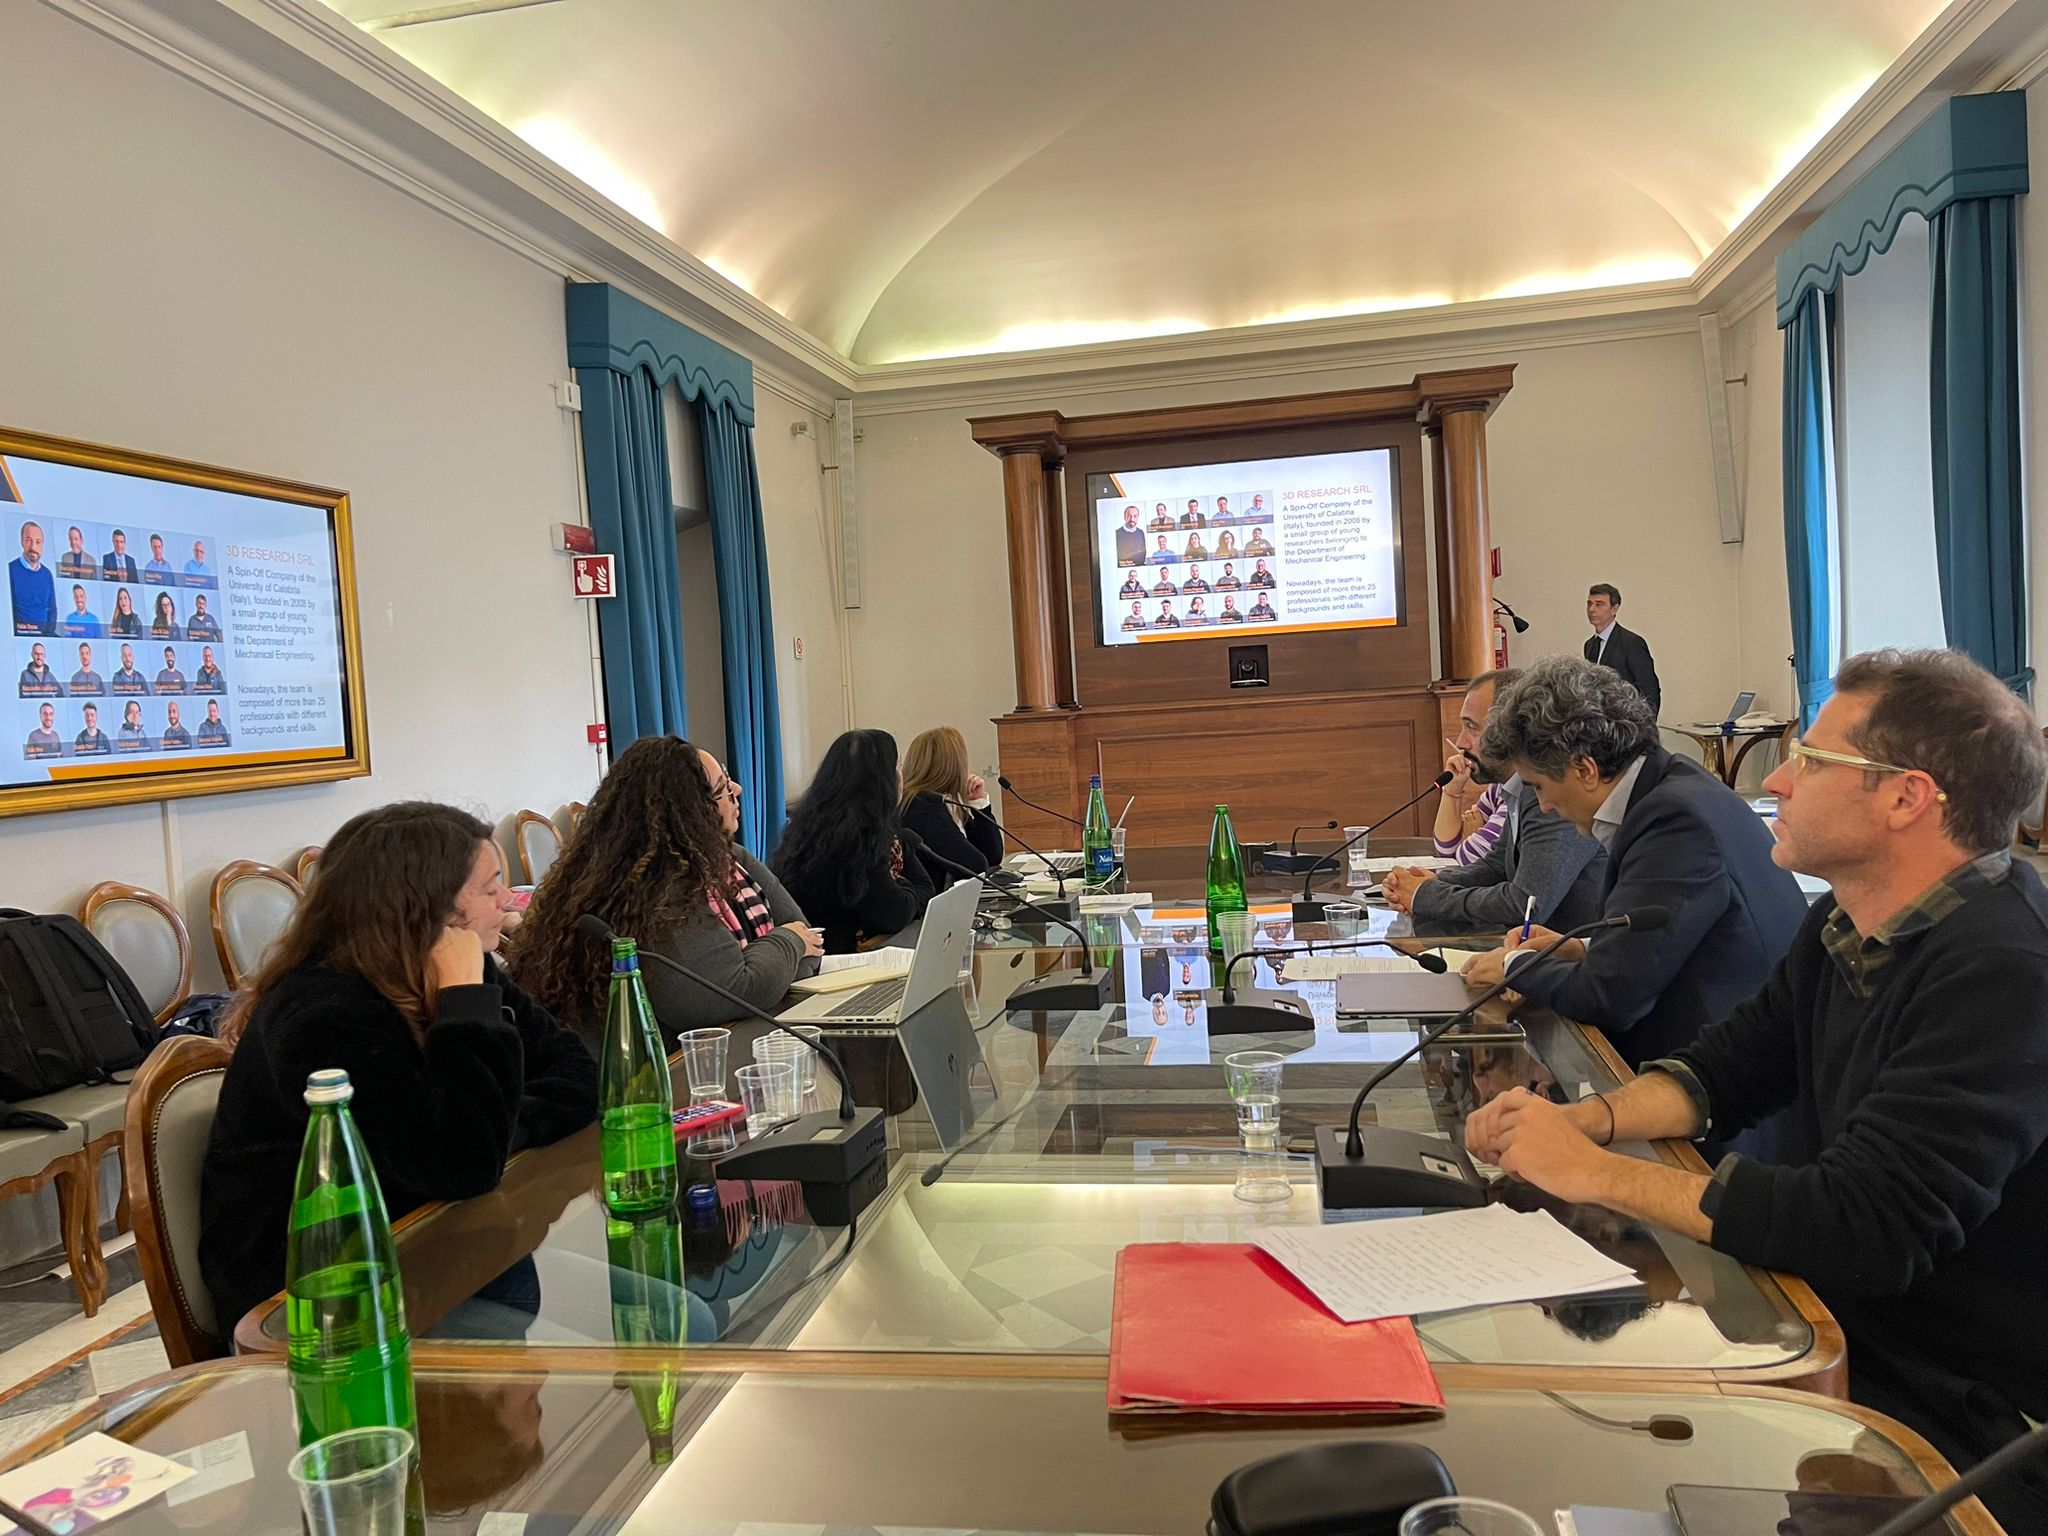 CREAMARE e ART4SEA al Networking Meeting of the Italian and Maltese Desks